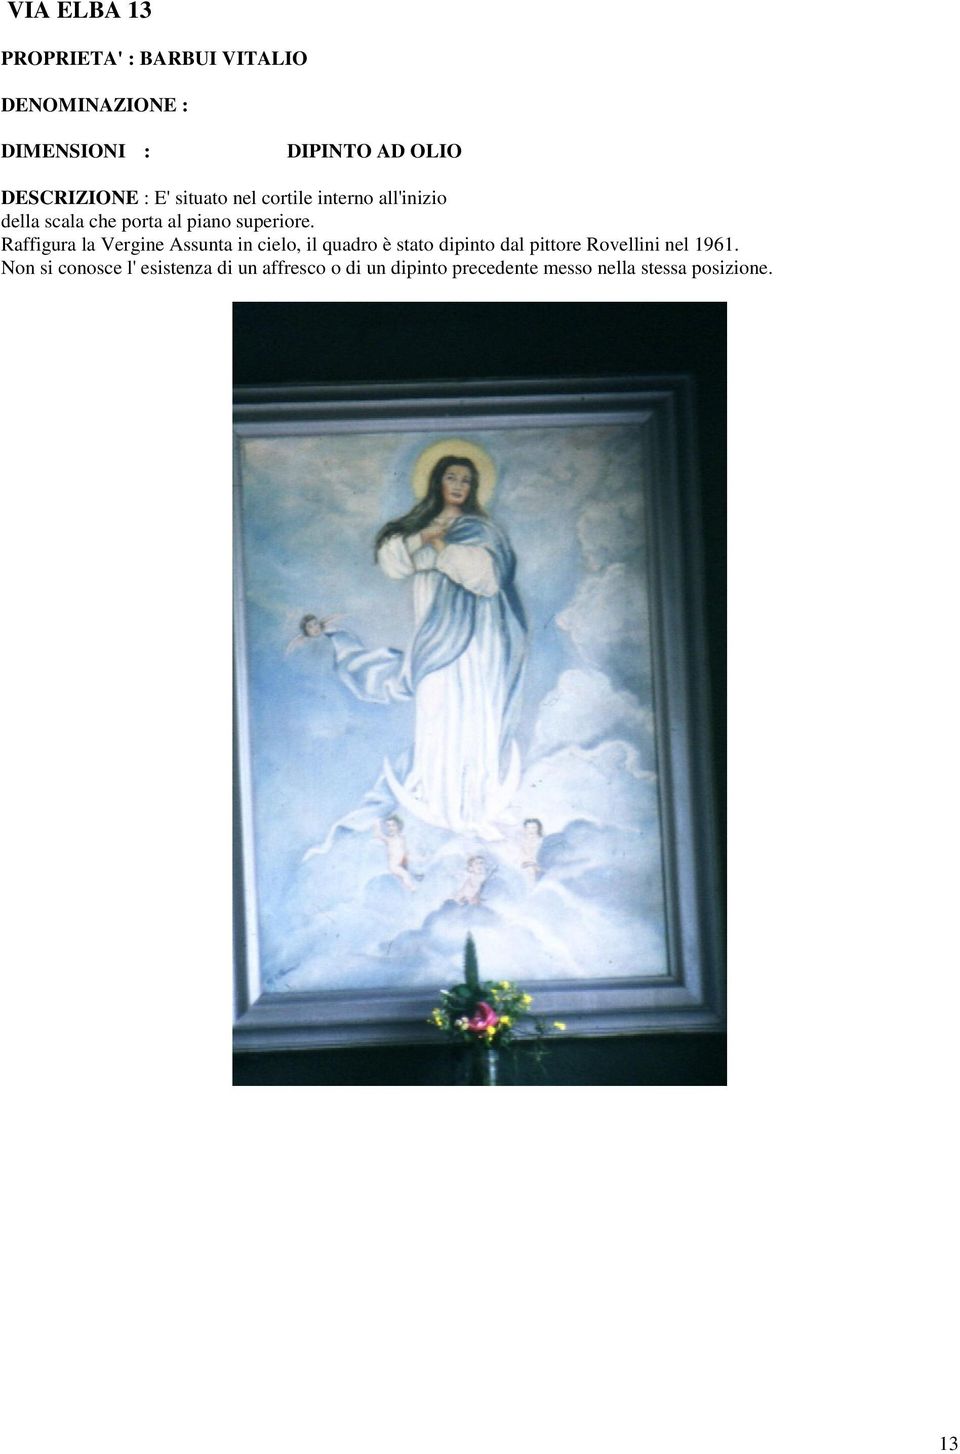 Raffigura la Vergine Assunta in cielo, il quadro è stato dipinto dal pittore Rovellini nel